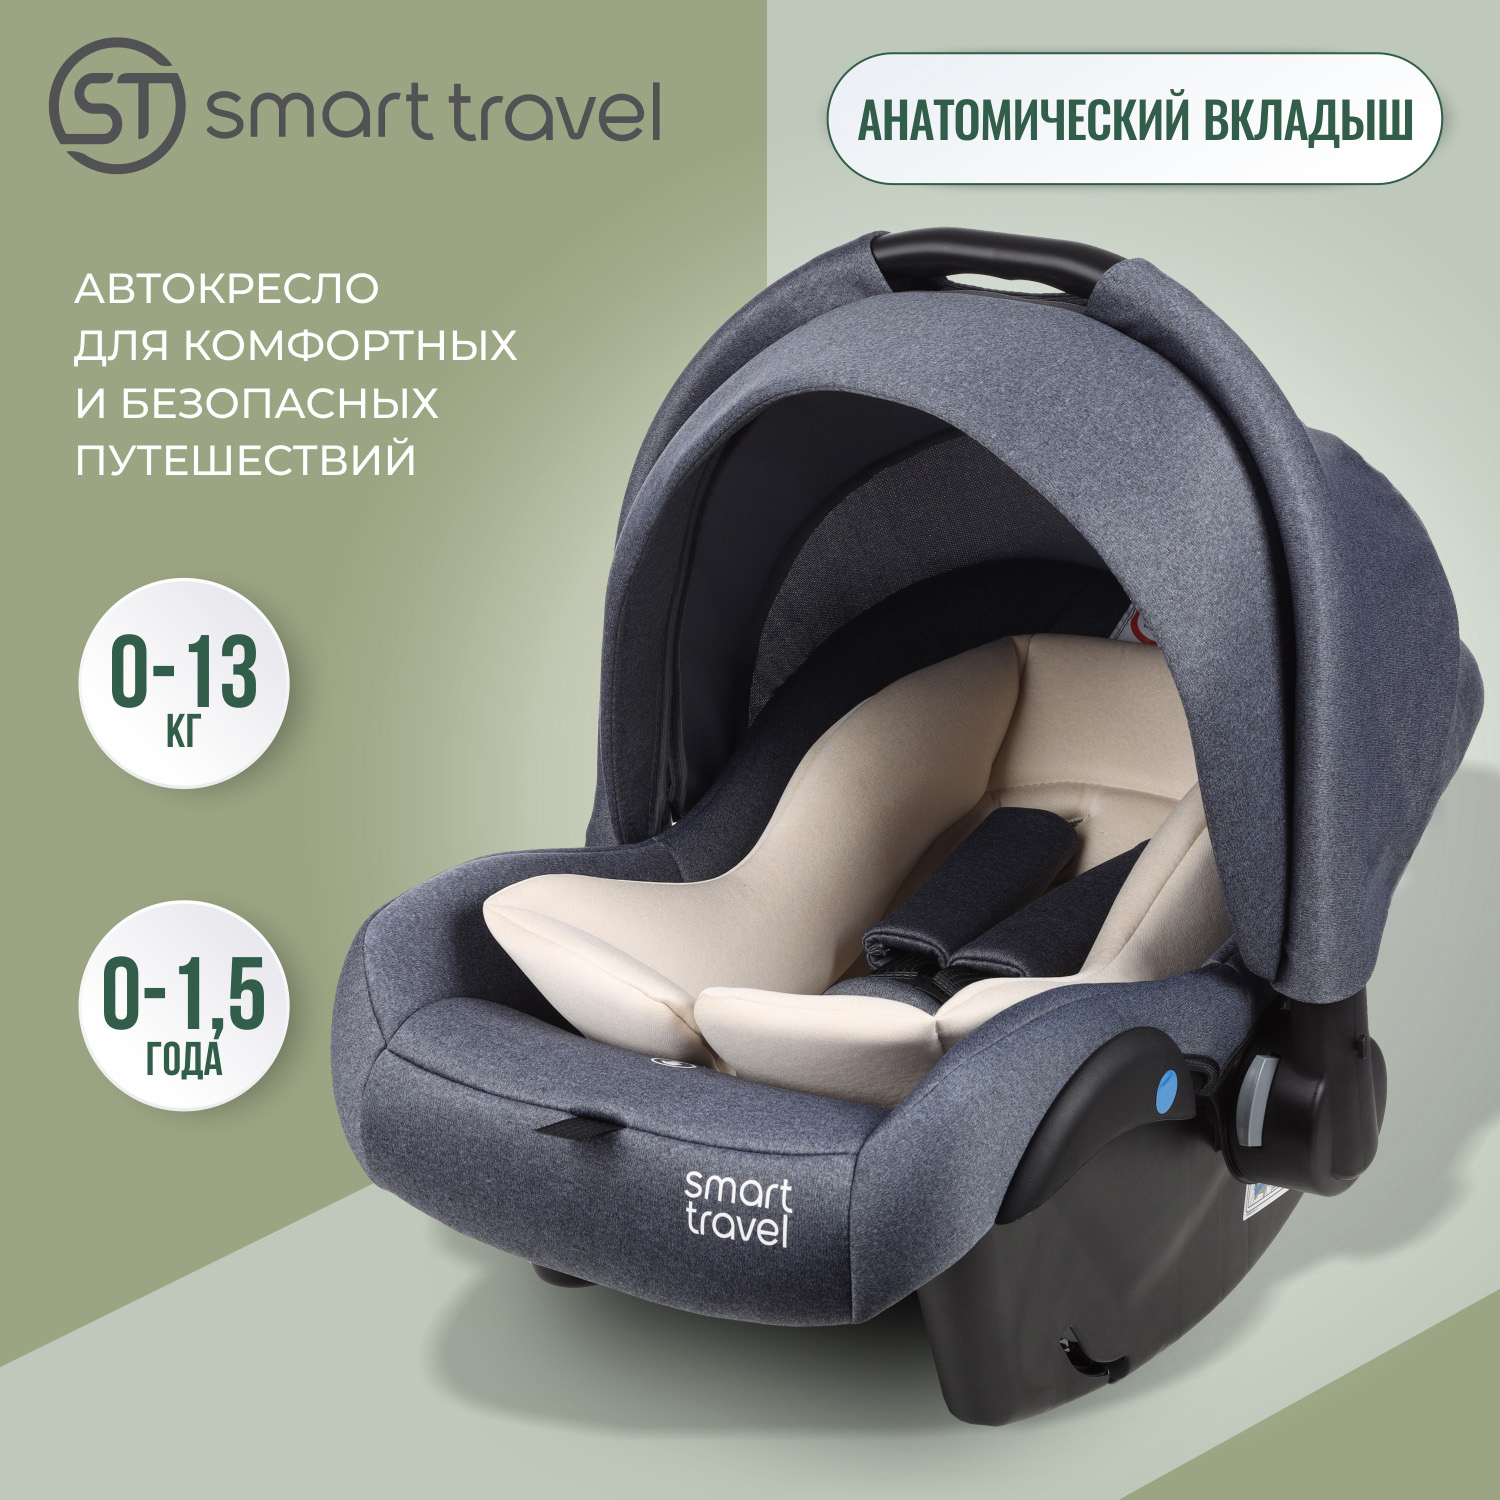 Детское автокресло Smart Travel First lux, группа 0+, до 1,5 лет, до 13 кг, blue